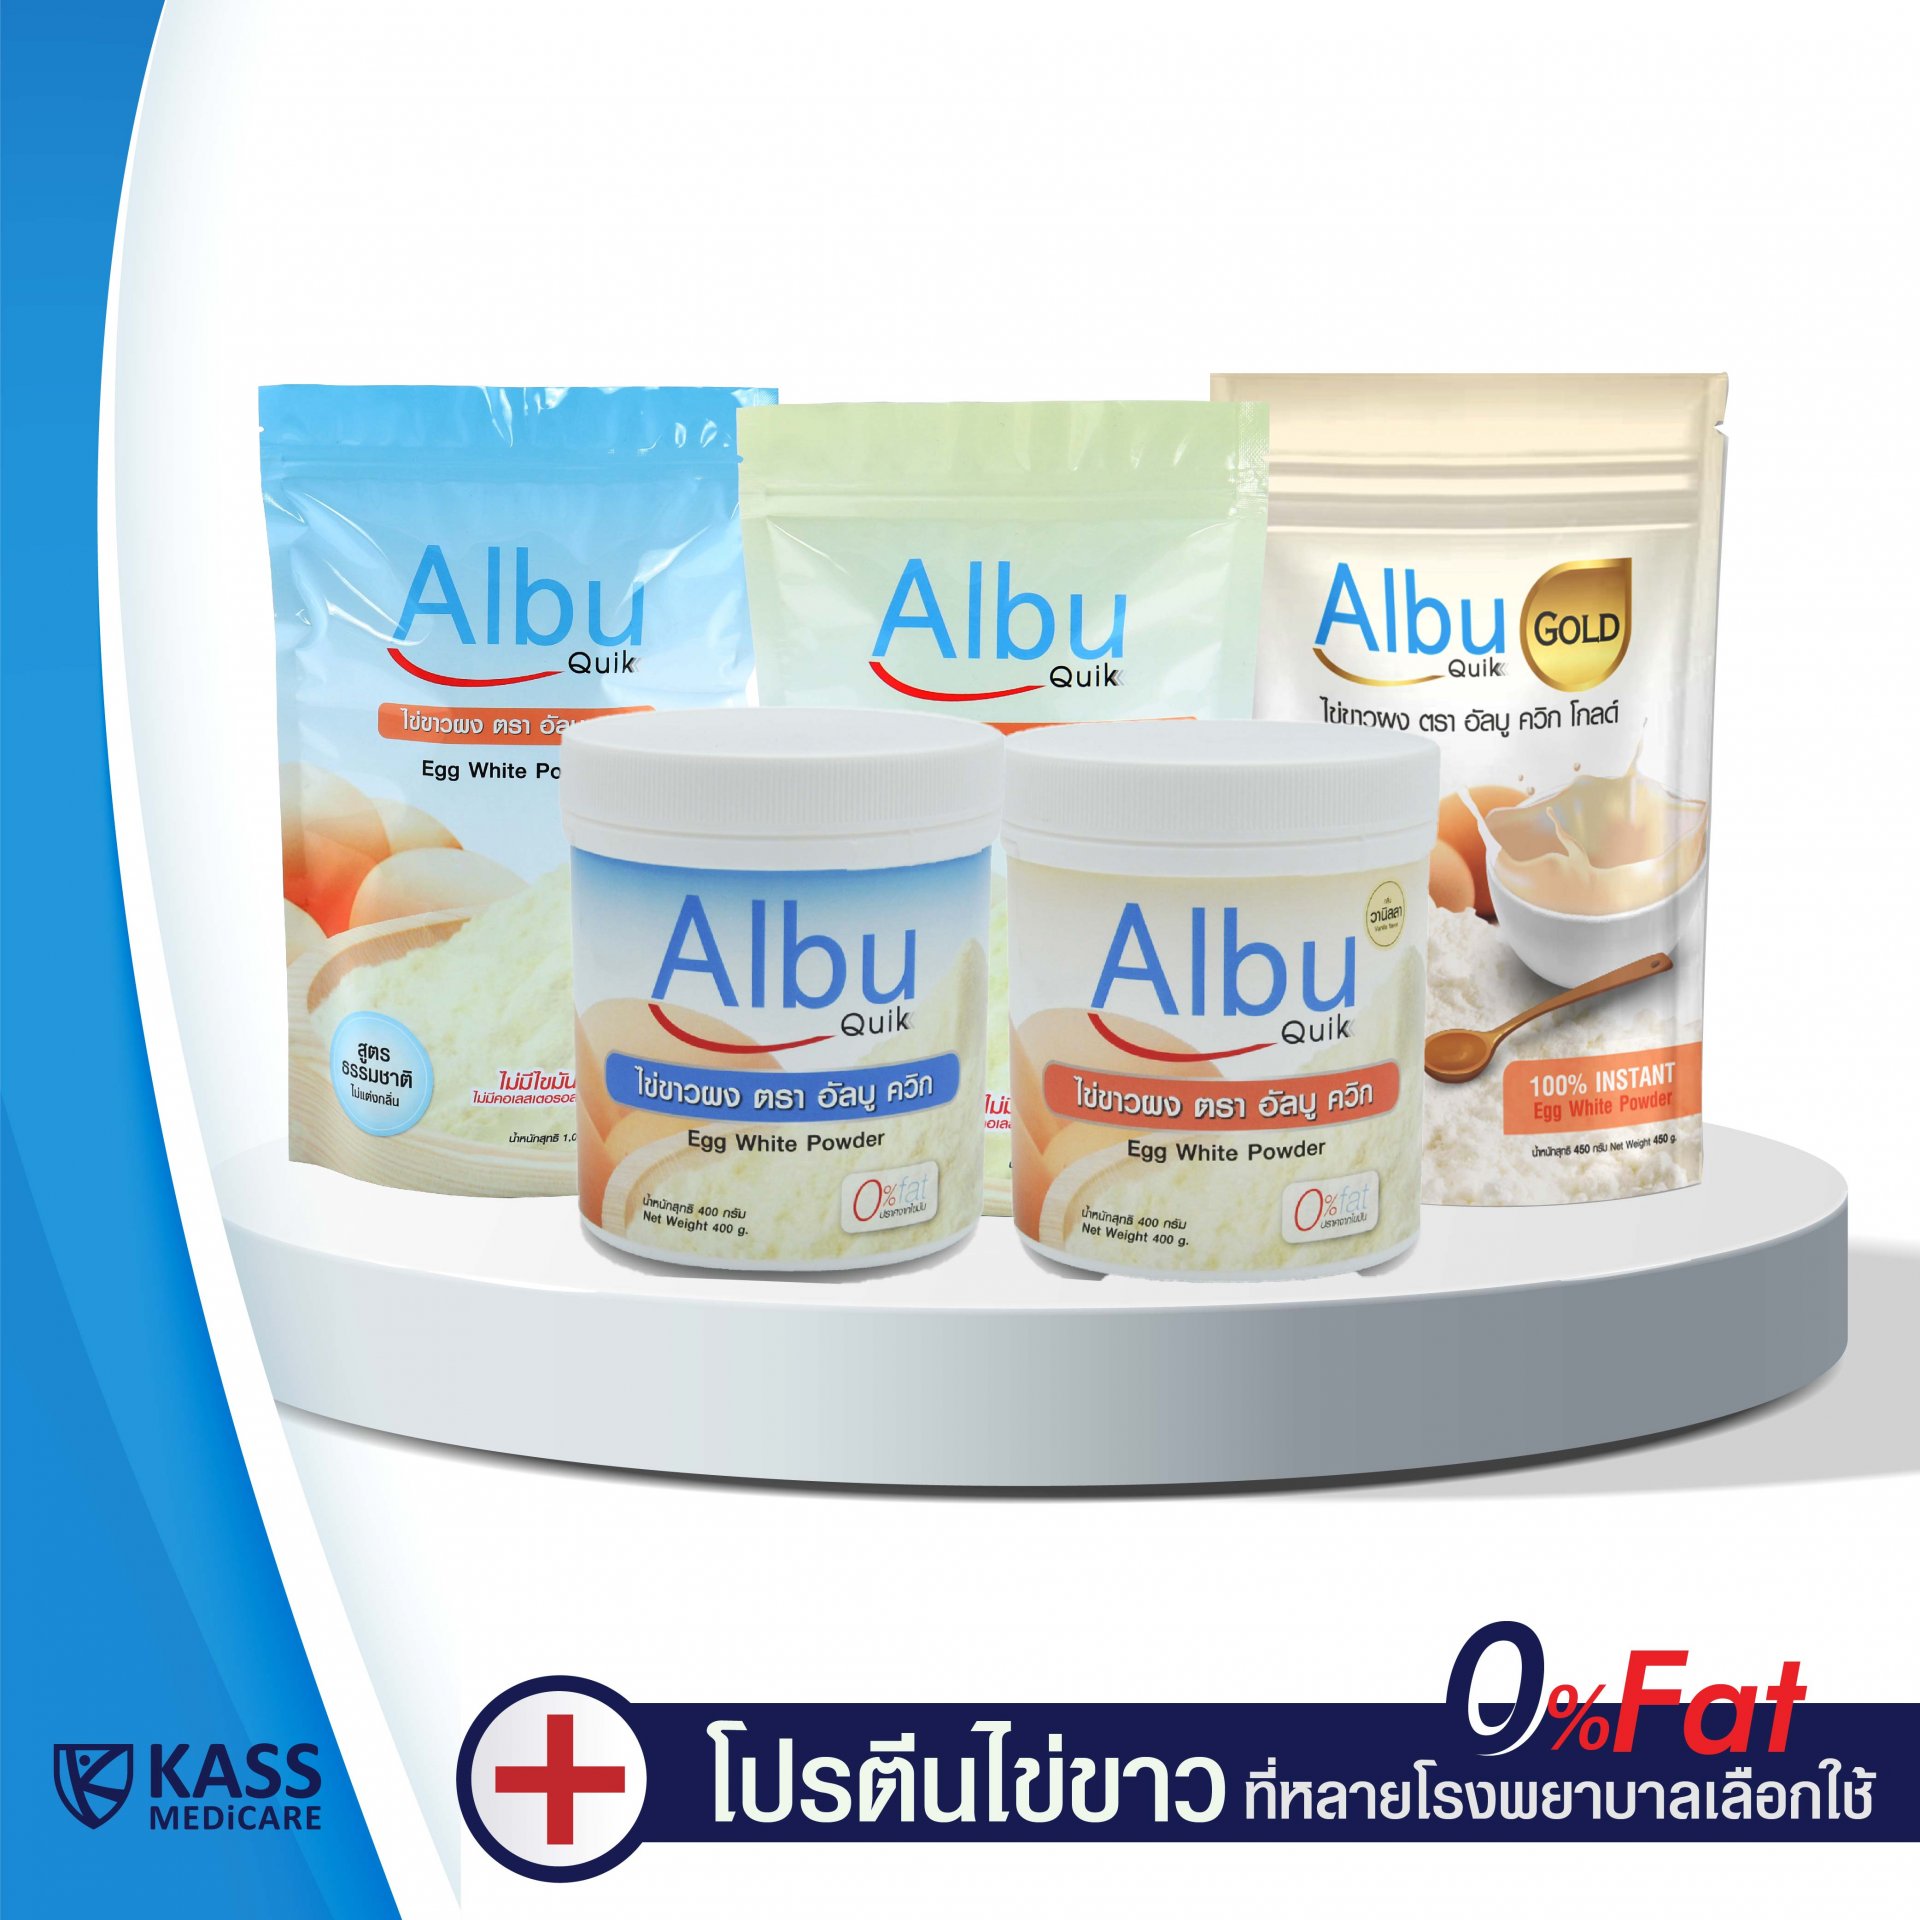 Albu Quik โปรตีนจากไข่ขาวผง อัลบูมิน ปราศจากไขมัน และ คลอเลสเตอรอล โซเดียมต่ำ ยี่ห้ออัลบู ควิก